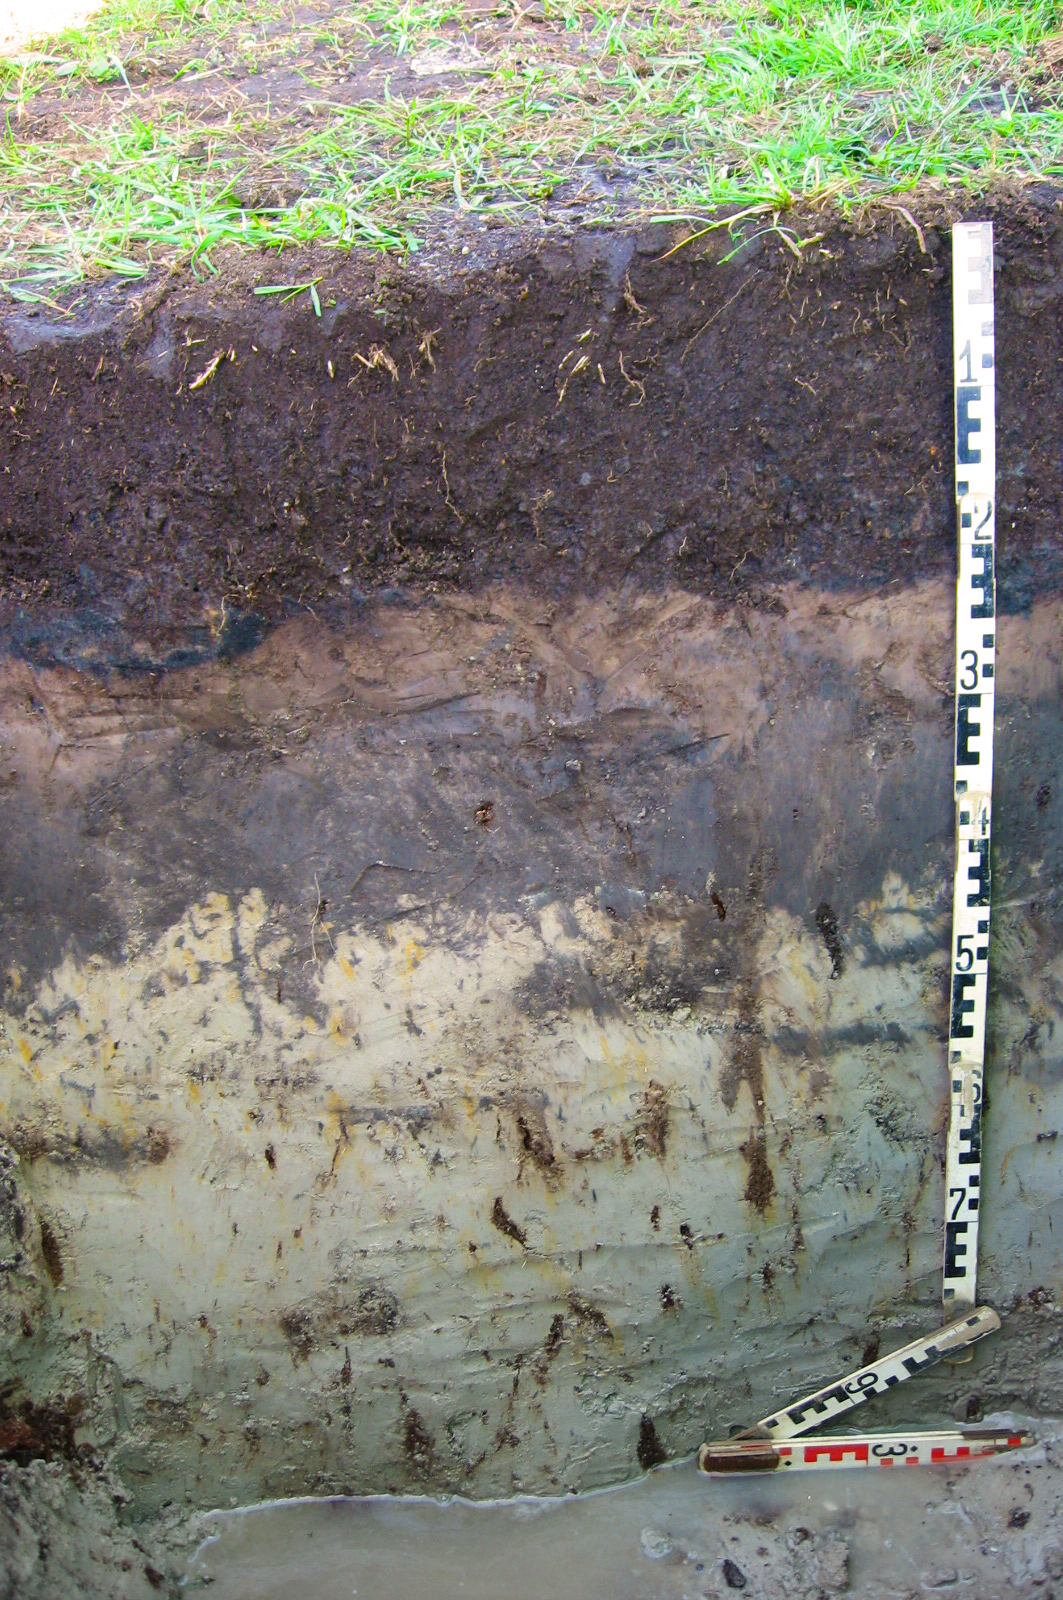 Bodenprofil: Anmoorgley aus schluffig-sandigen Bachablagerungen